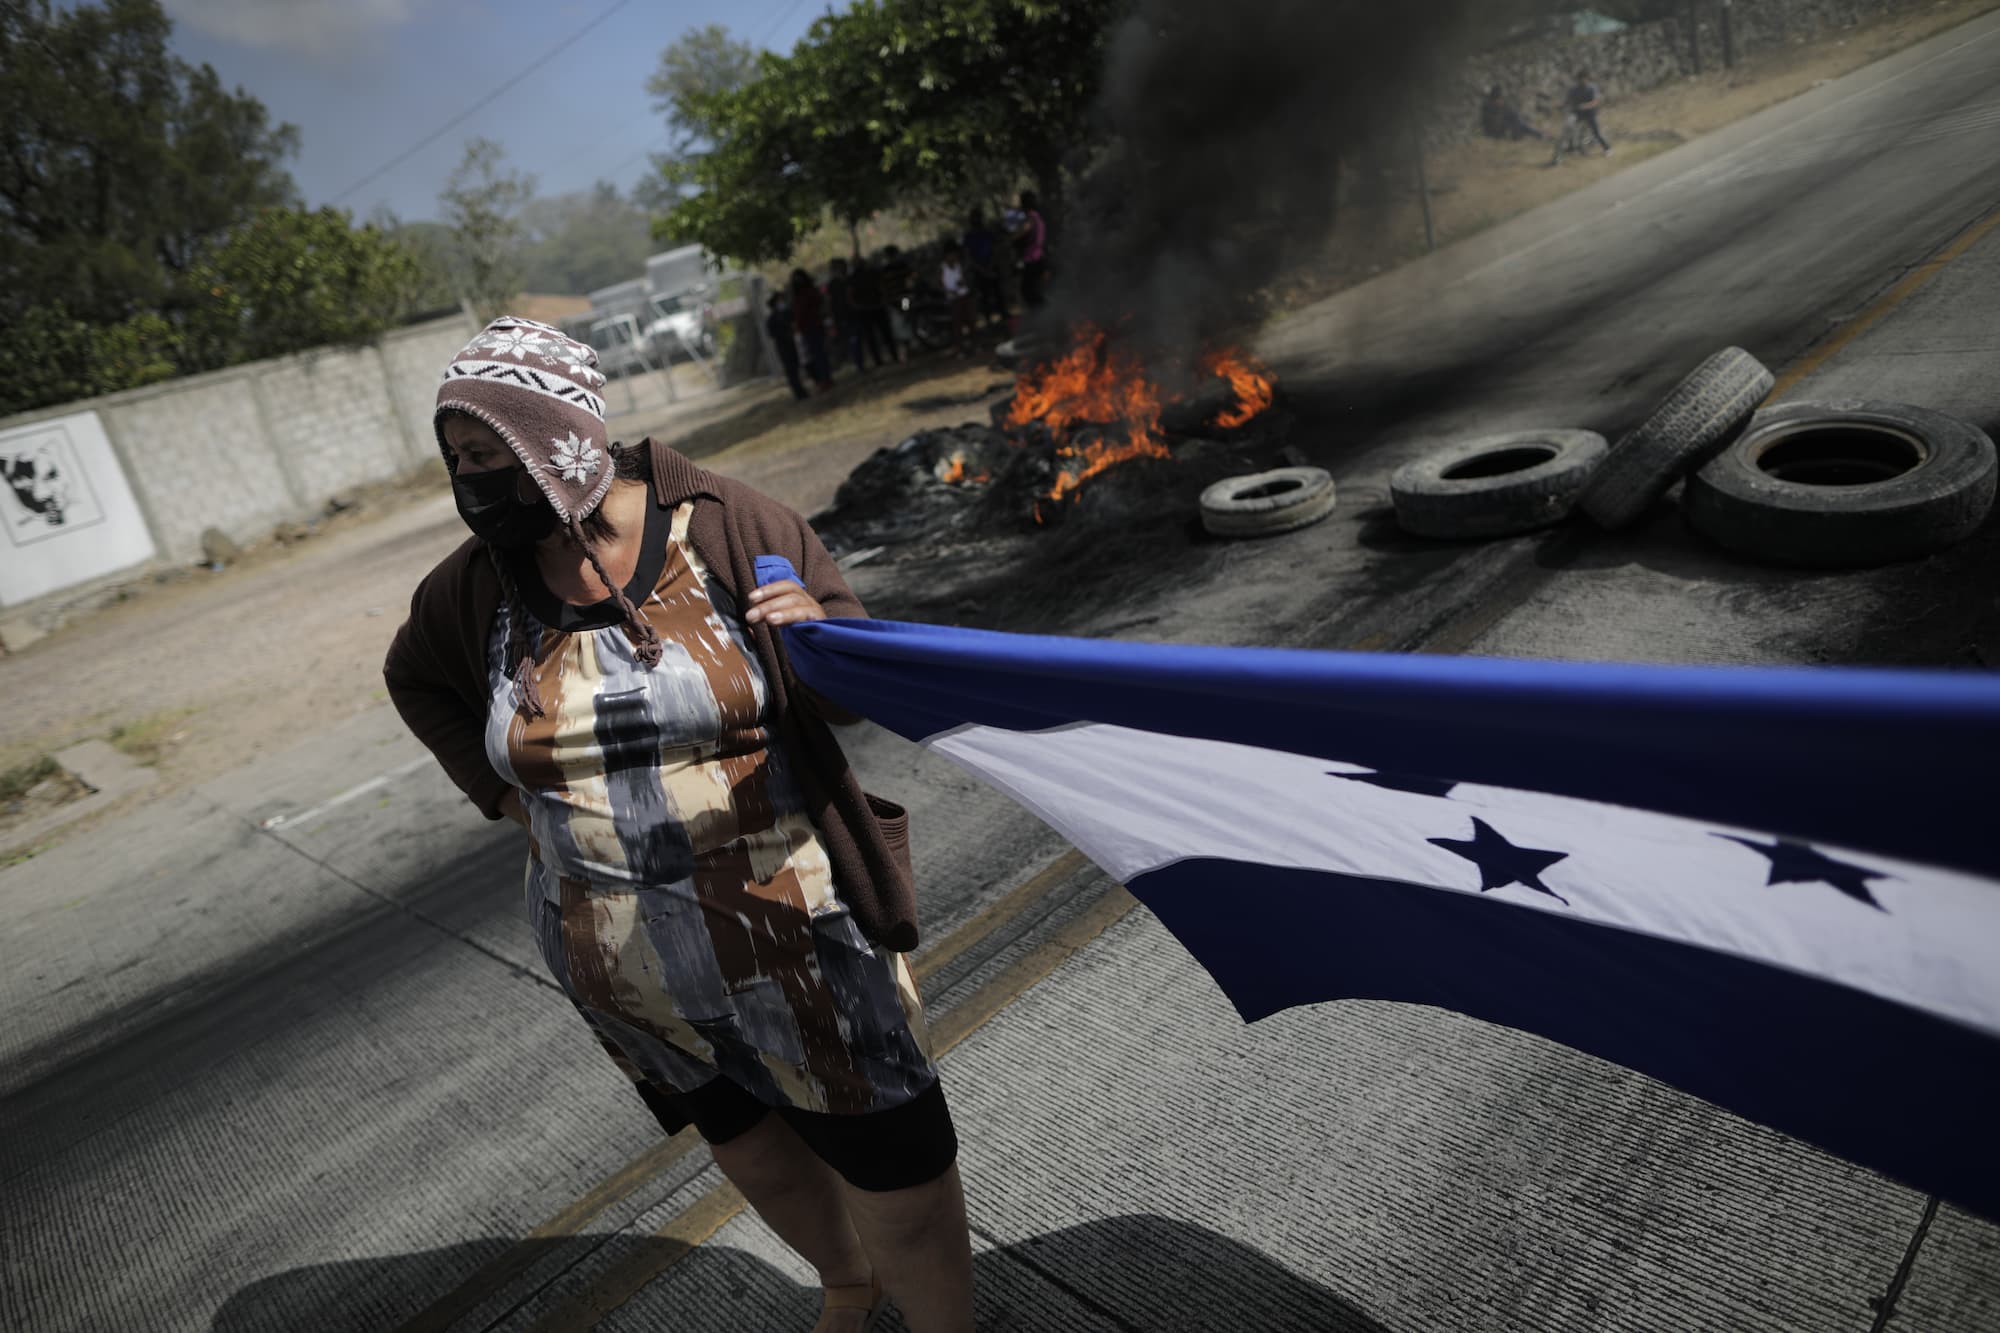 Padres de familias bloquean con llantas la carretera al sur, en favor de maestros que aun no se les brindan sus plazas. Foto CC/Jorge Cabrera